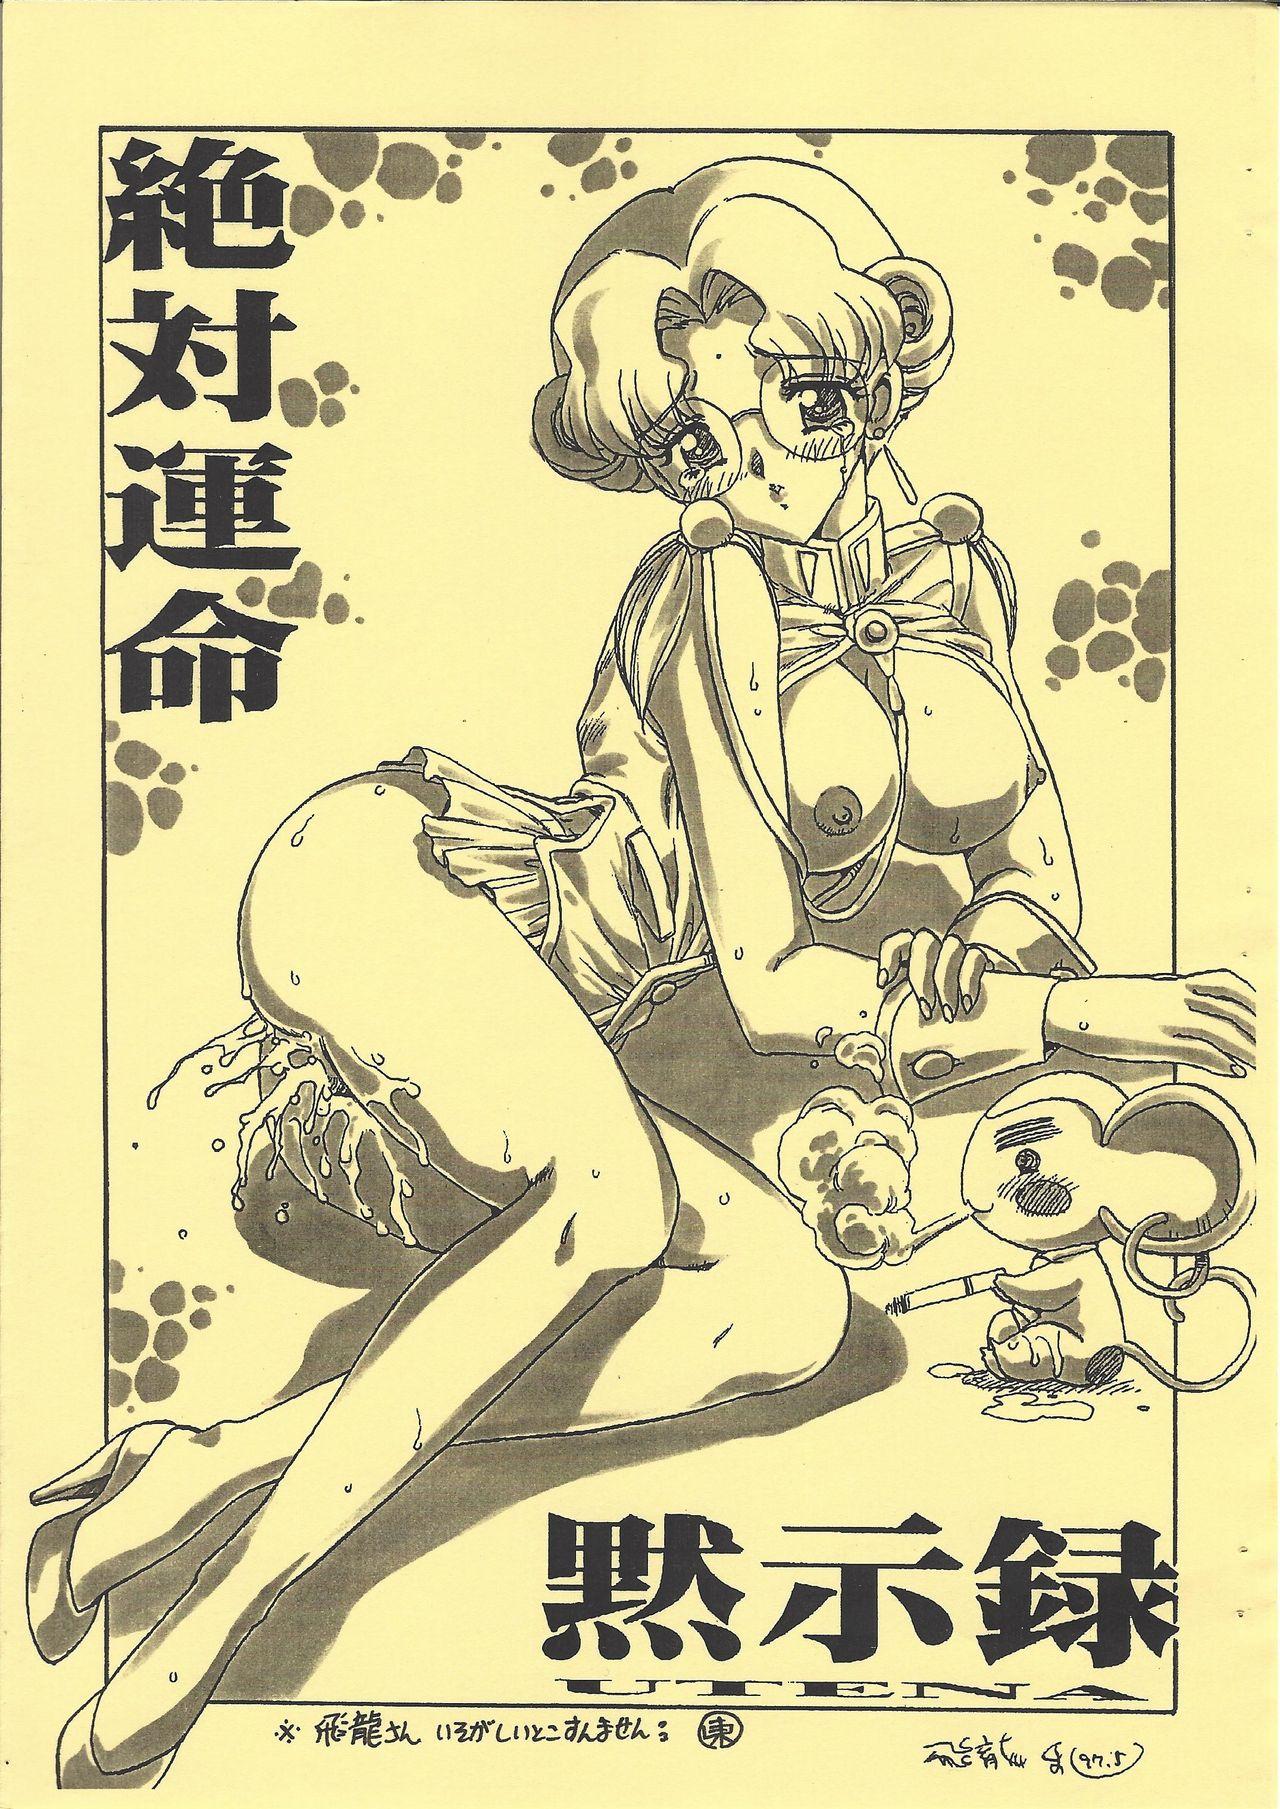 Anale Shinpi no Sekai Taisen - El hazard Sakura taisen | sakura wars Revolutionary girl utena | shoujo kakumei utena Femdom Pov - Page 3